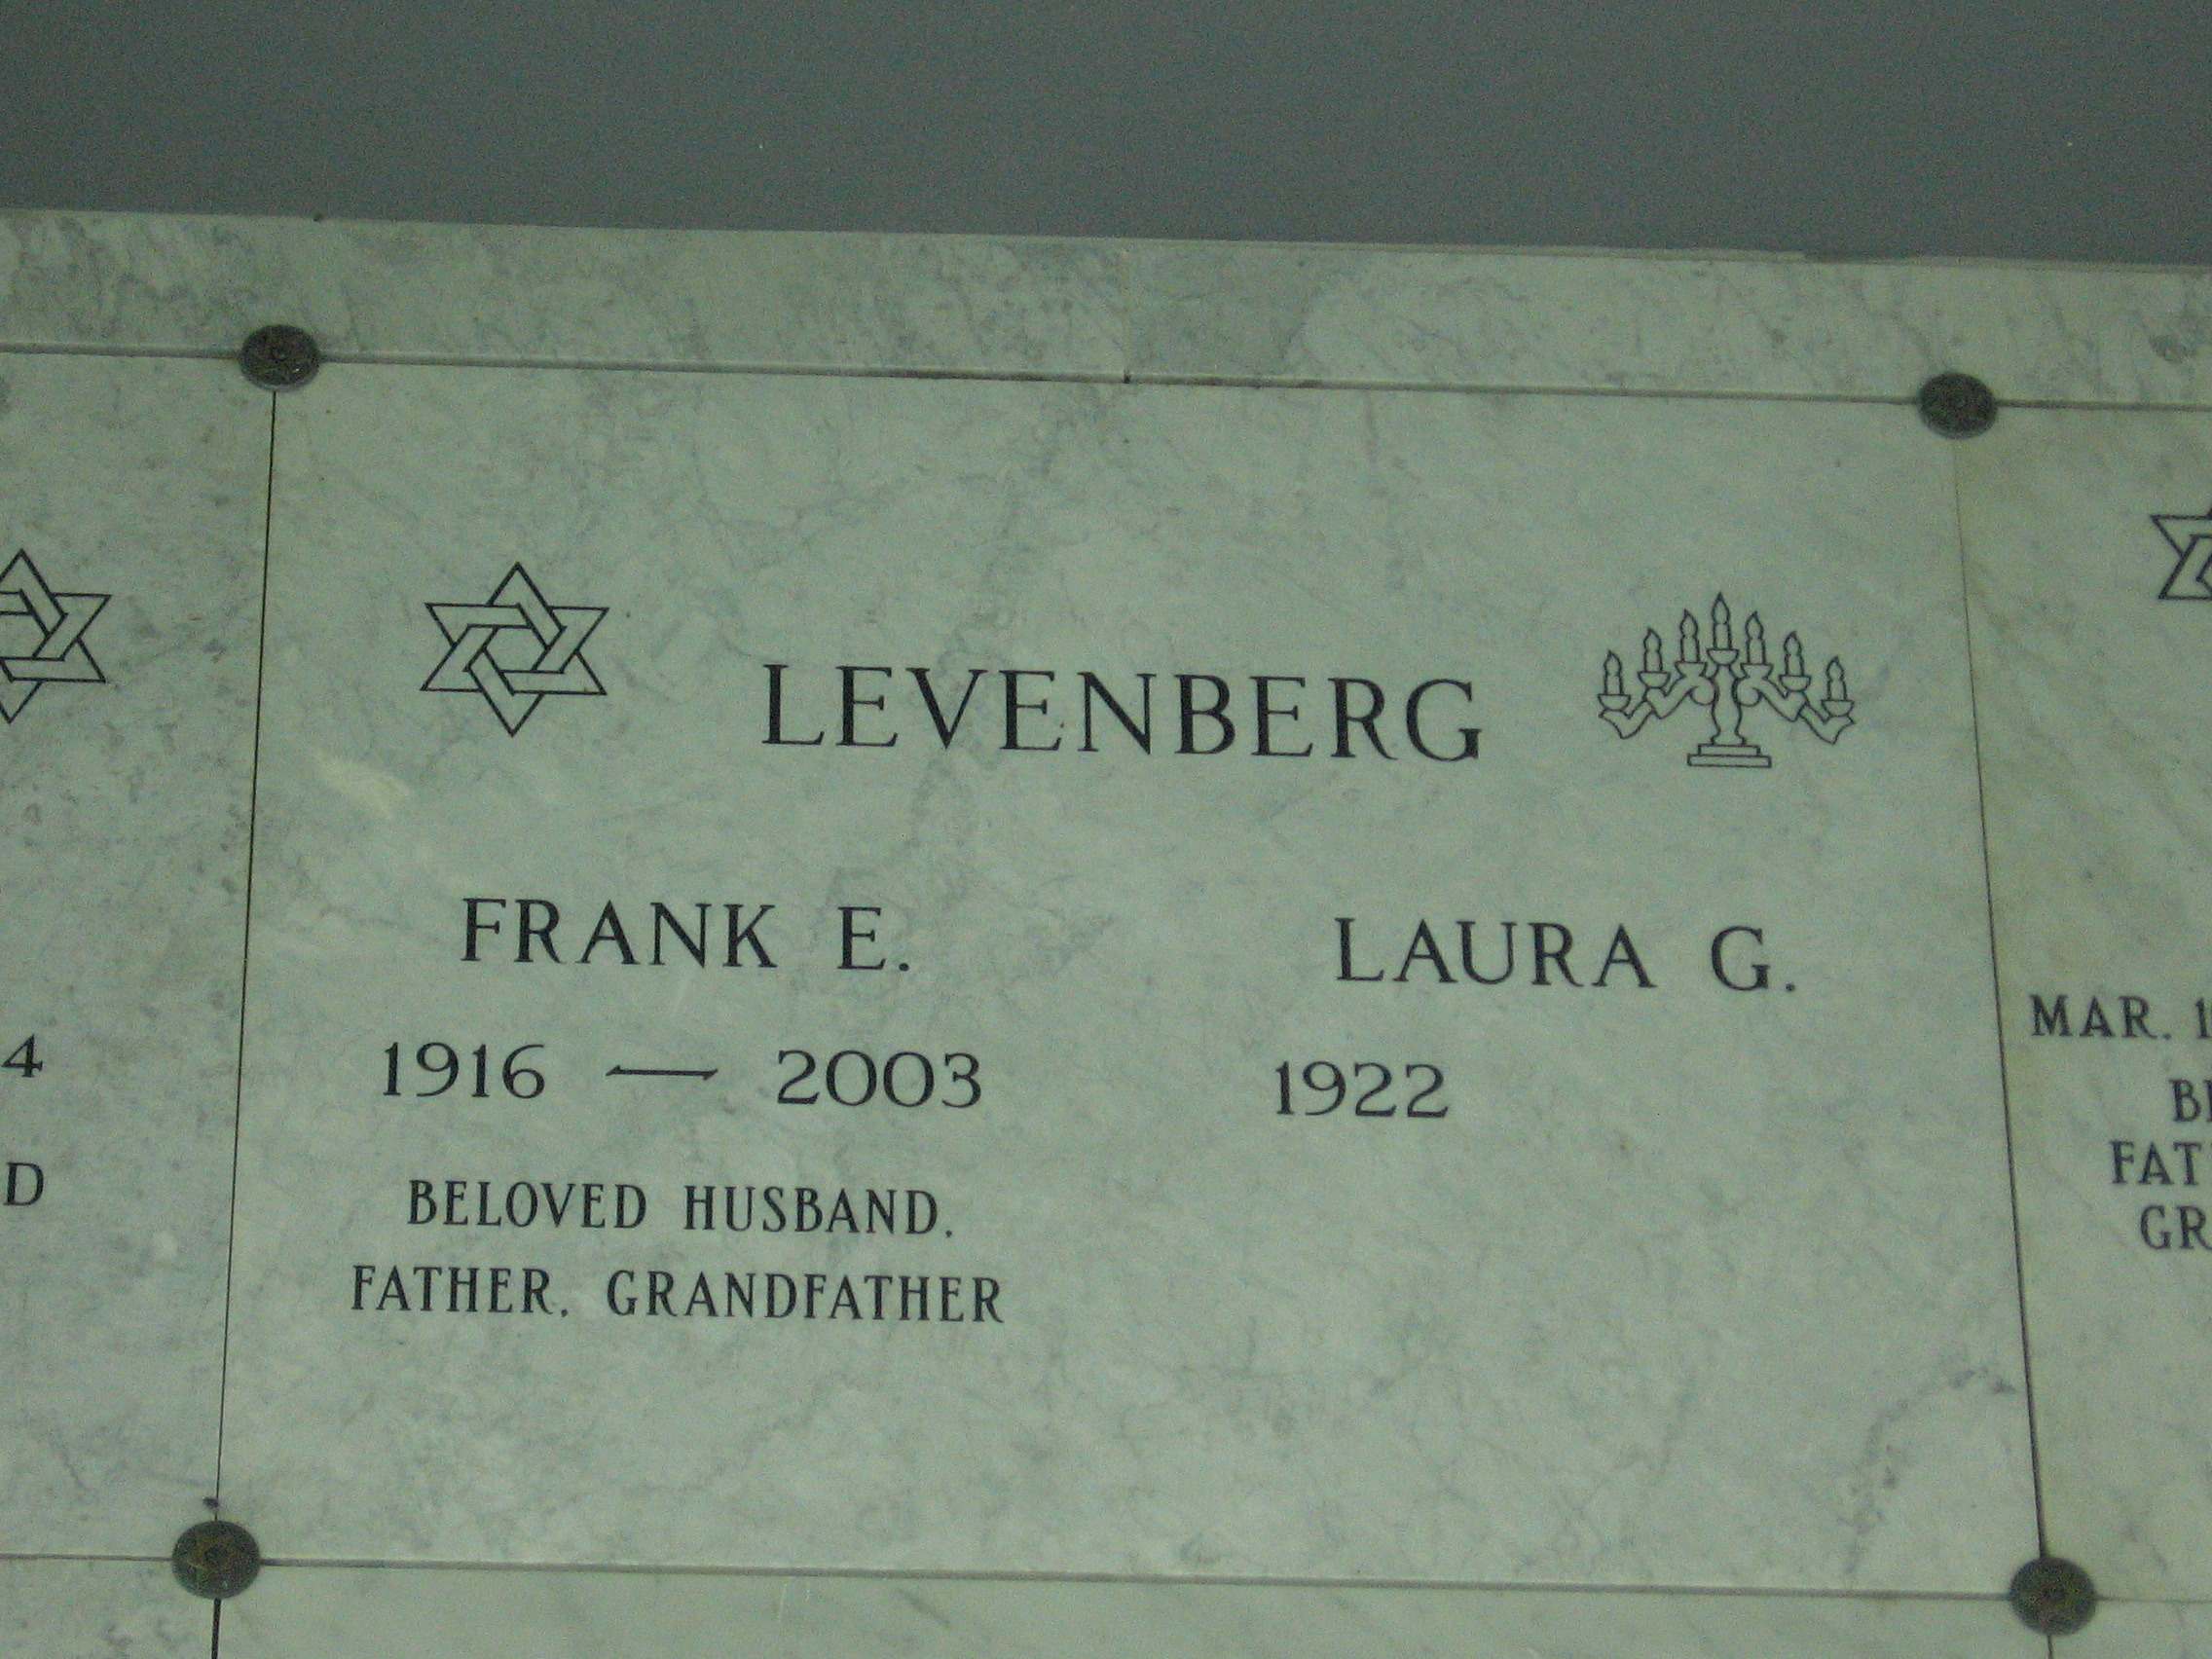 Frank E Levenberg